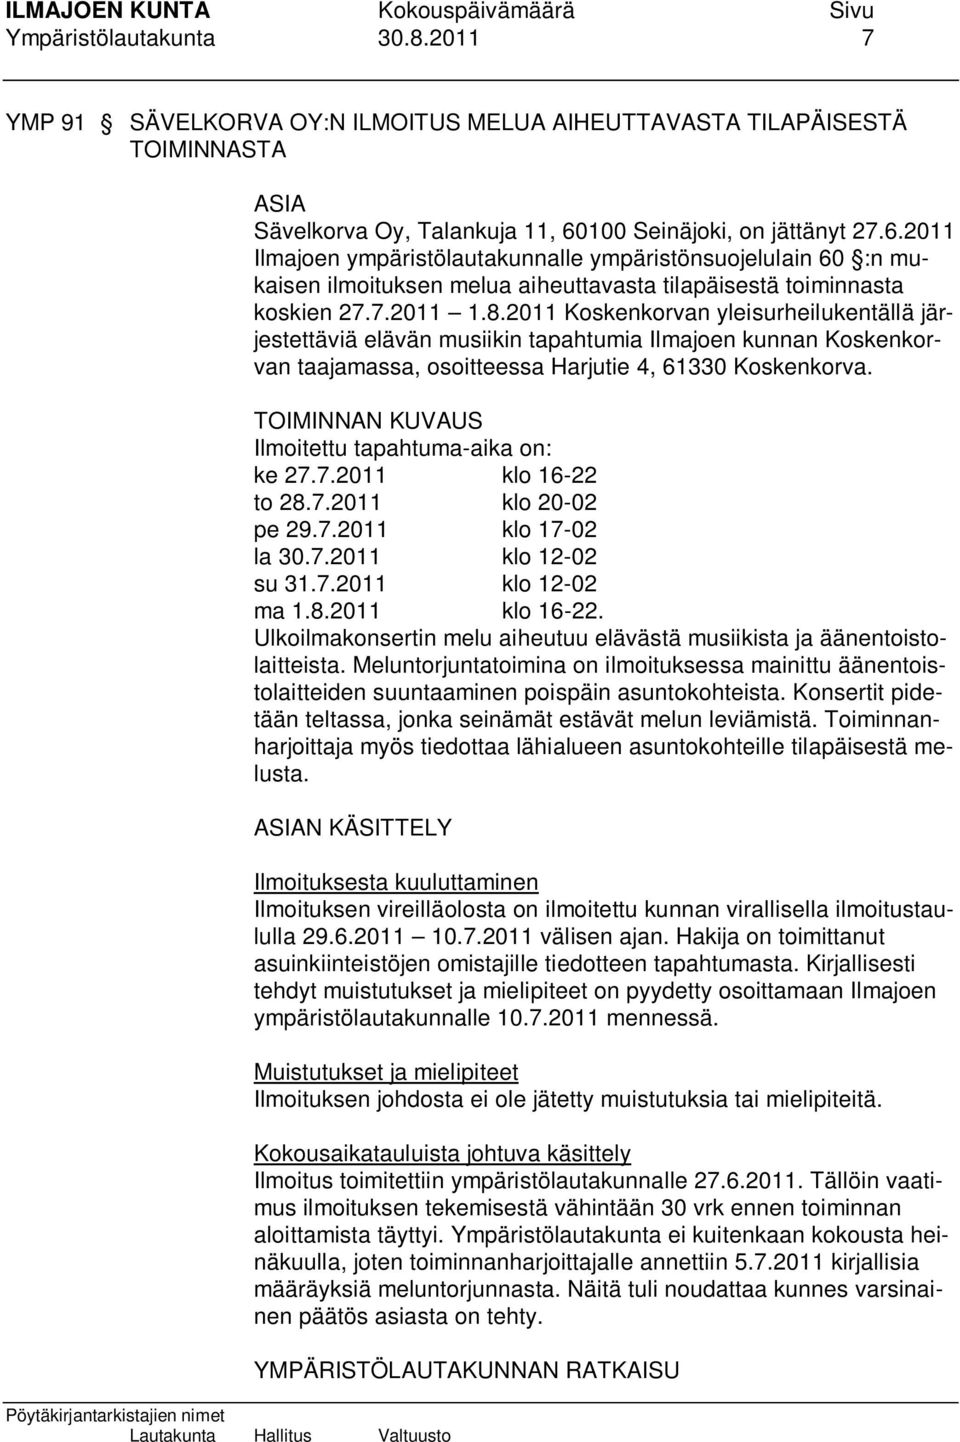 2011 Koskenkorvan yleisurheilukentällä järjestettäviä elävän musiikin tapahtumia Ilmajoen kunnan Koskenkorvan taajamassa, osoitteessa Harjutie 4, 61330 Koskenkorva.